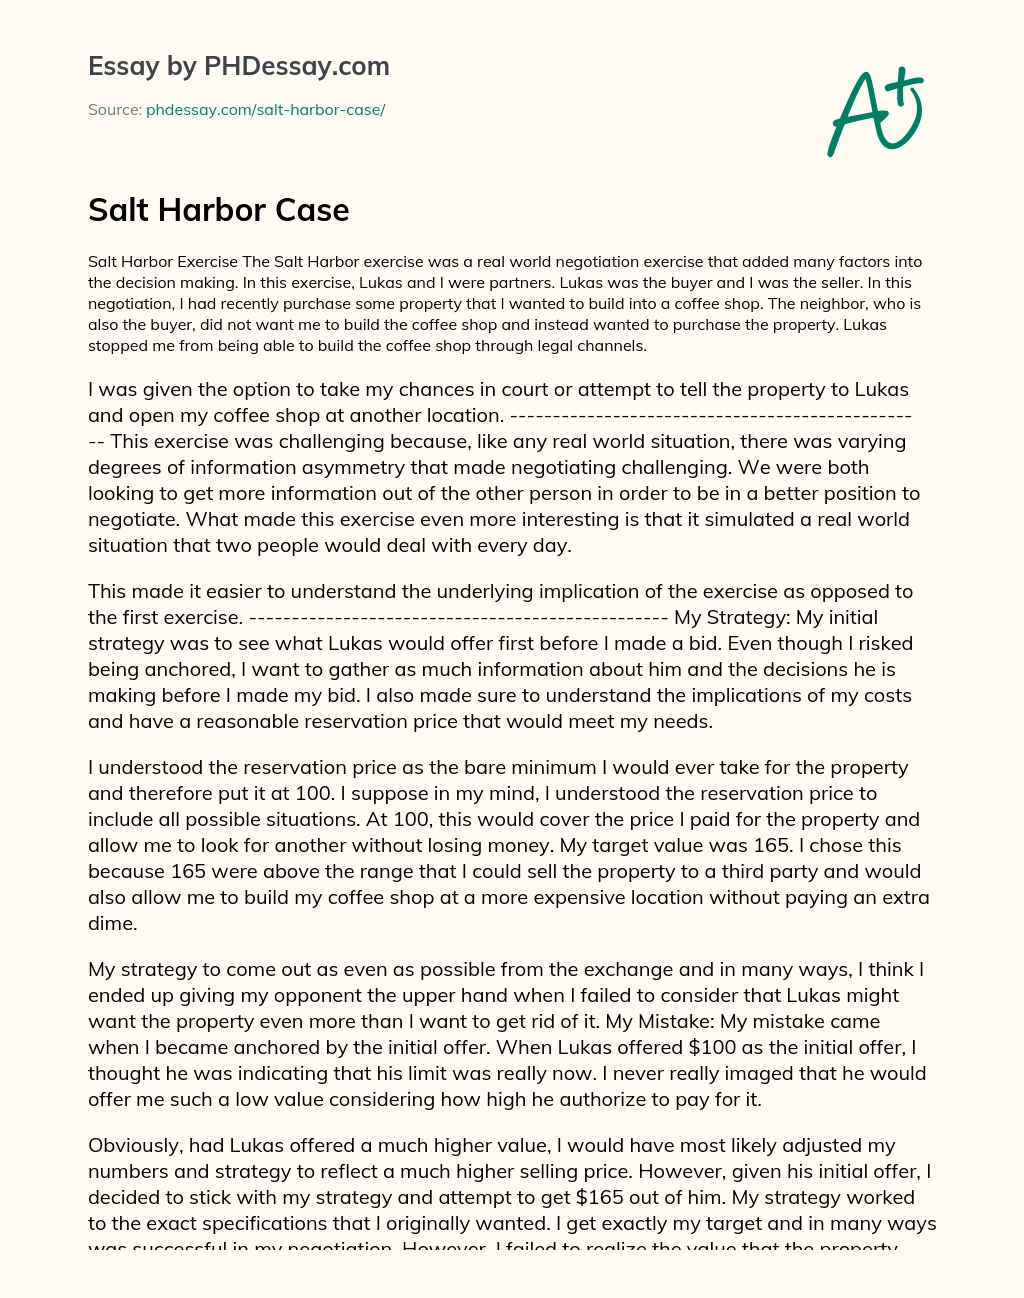 Salt Harbor Case essay